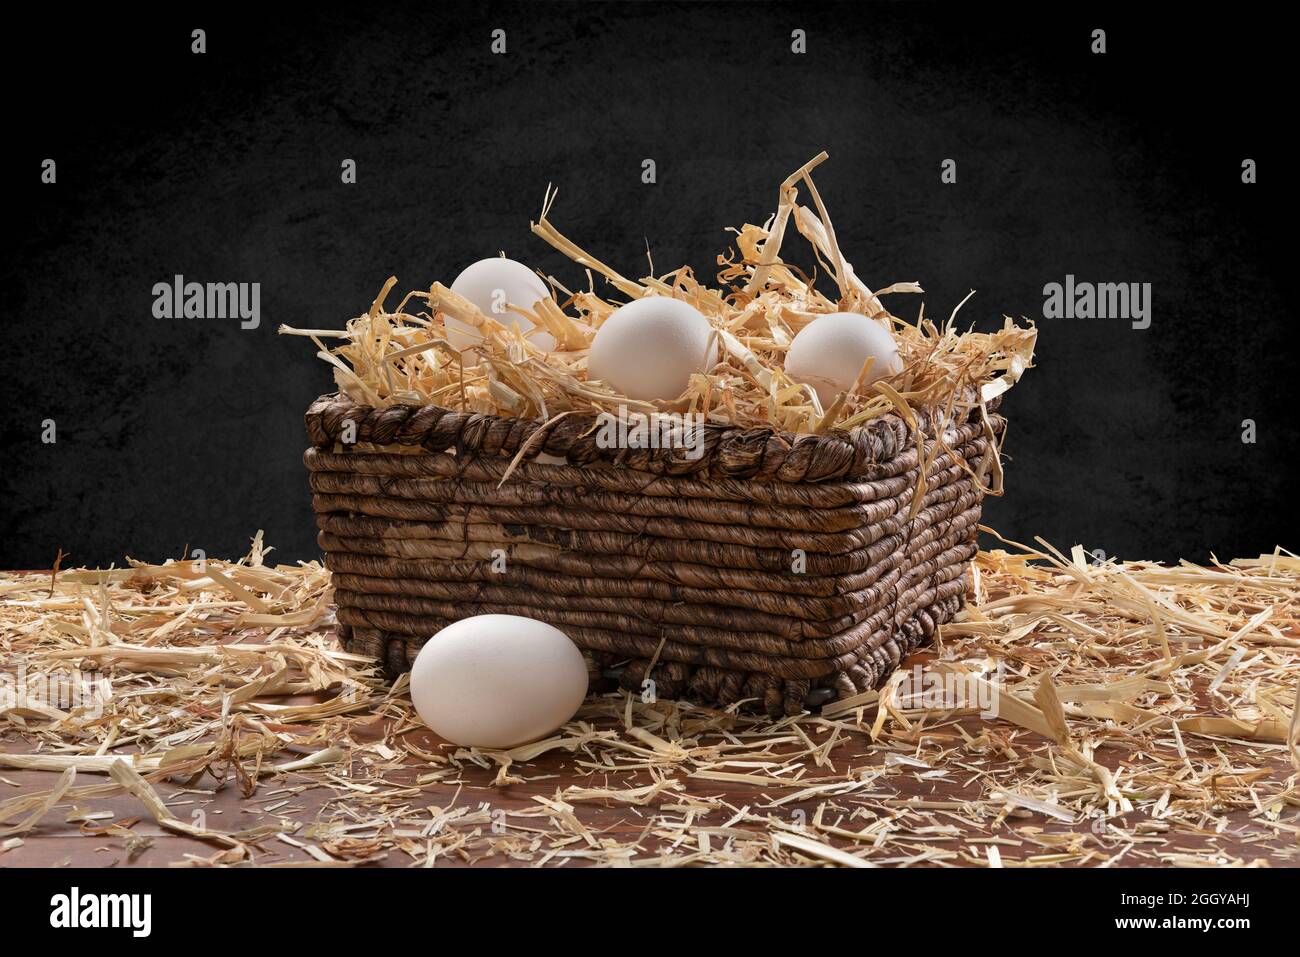 Una pequeña cesta de mimbre de huevos recién recolectados con heno en la parte superior de una mesa de teca y enmarcada por un sutil fondo negro moteado. Foto de stock